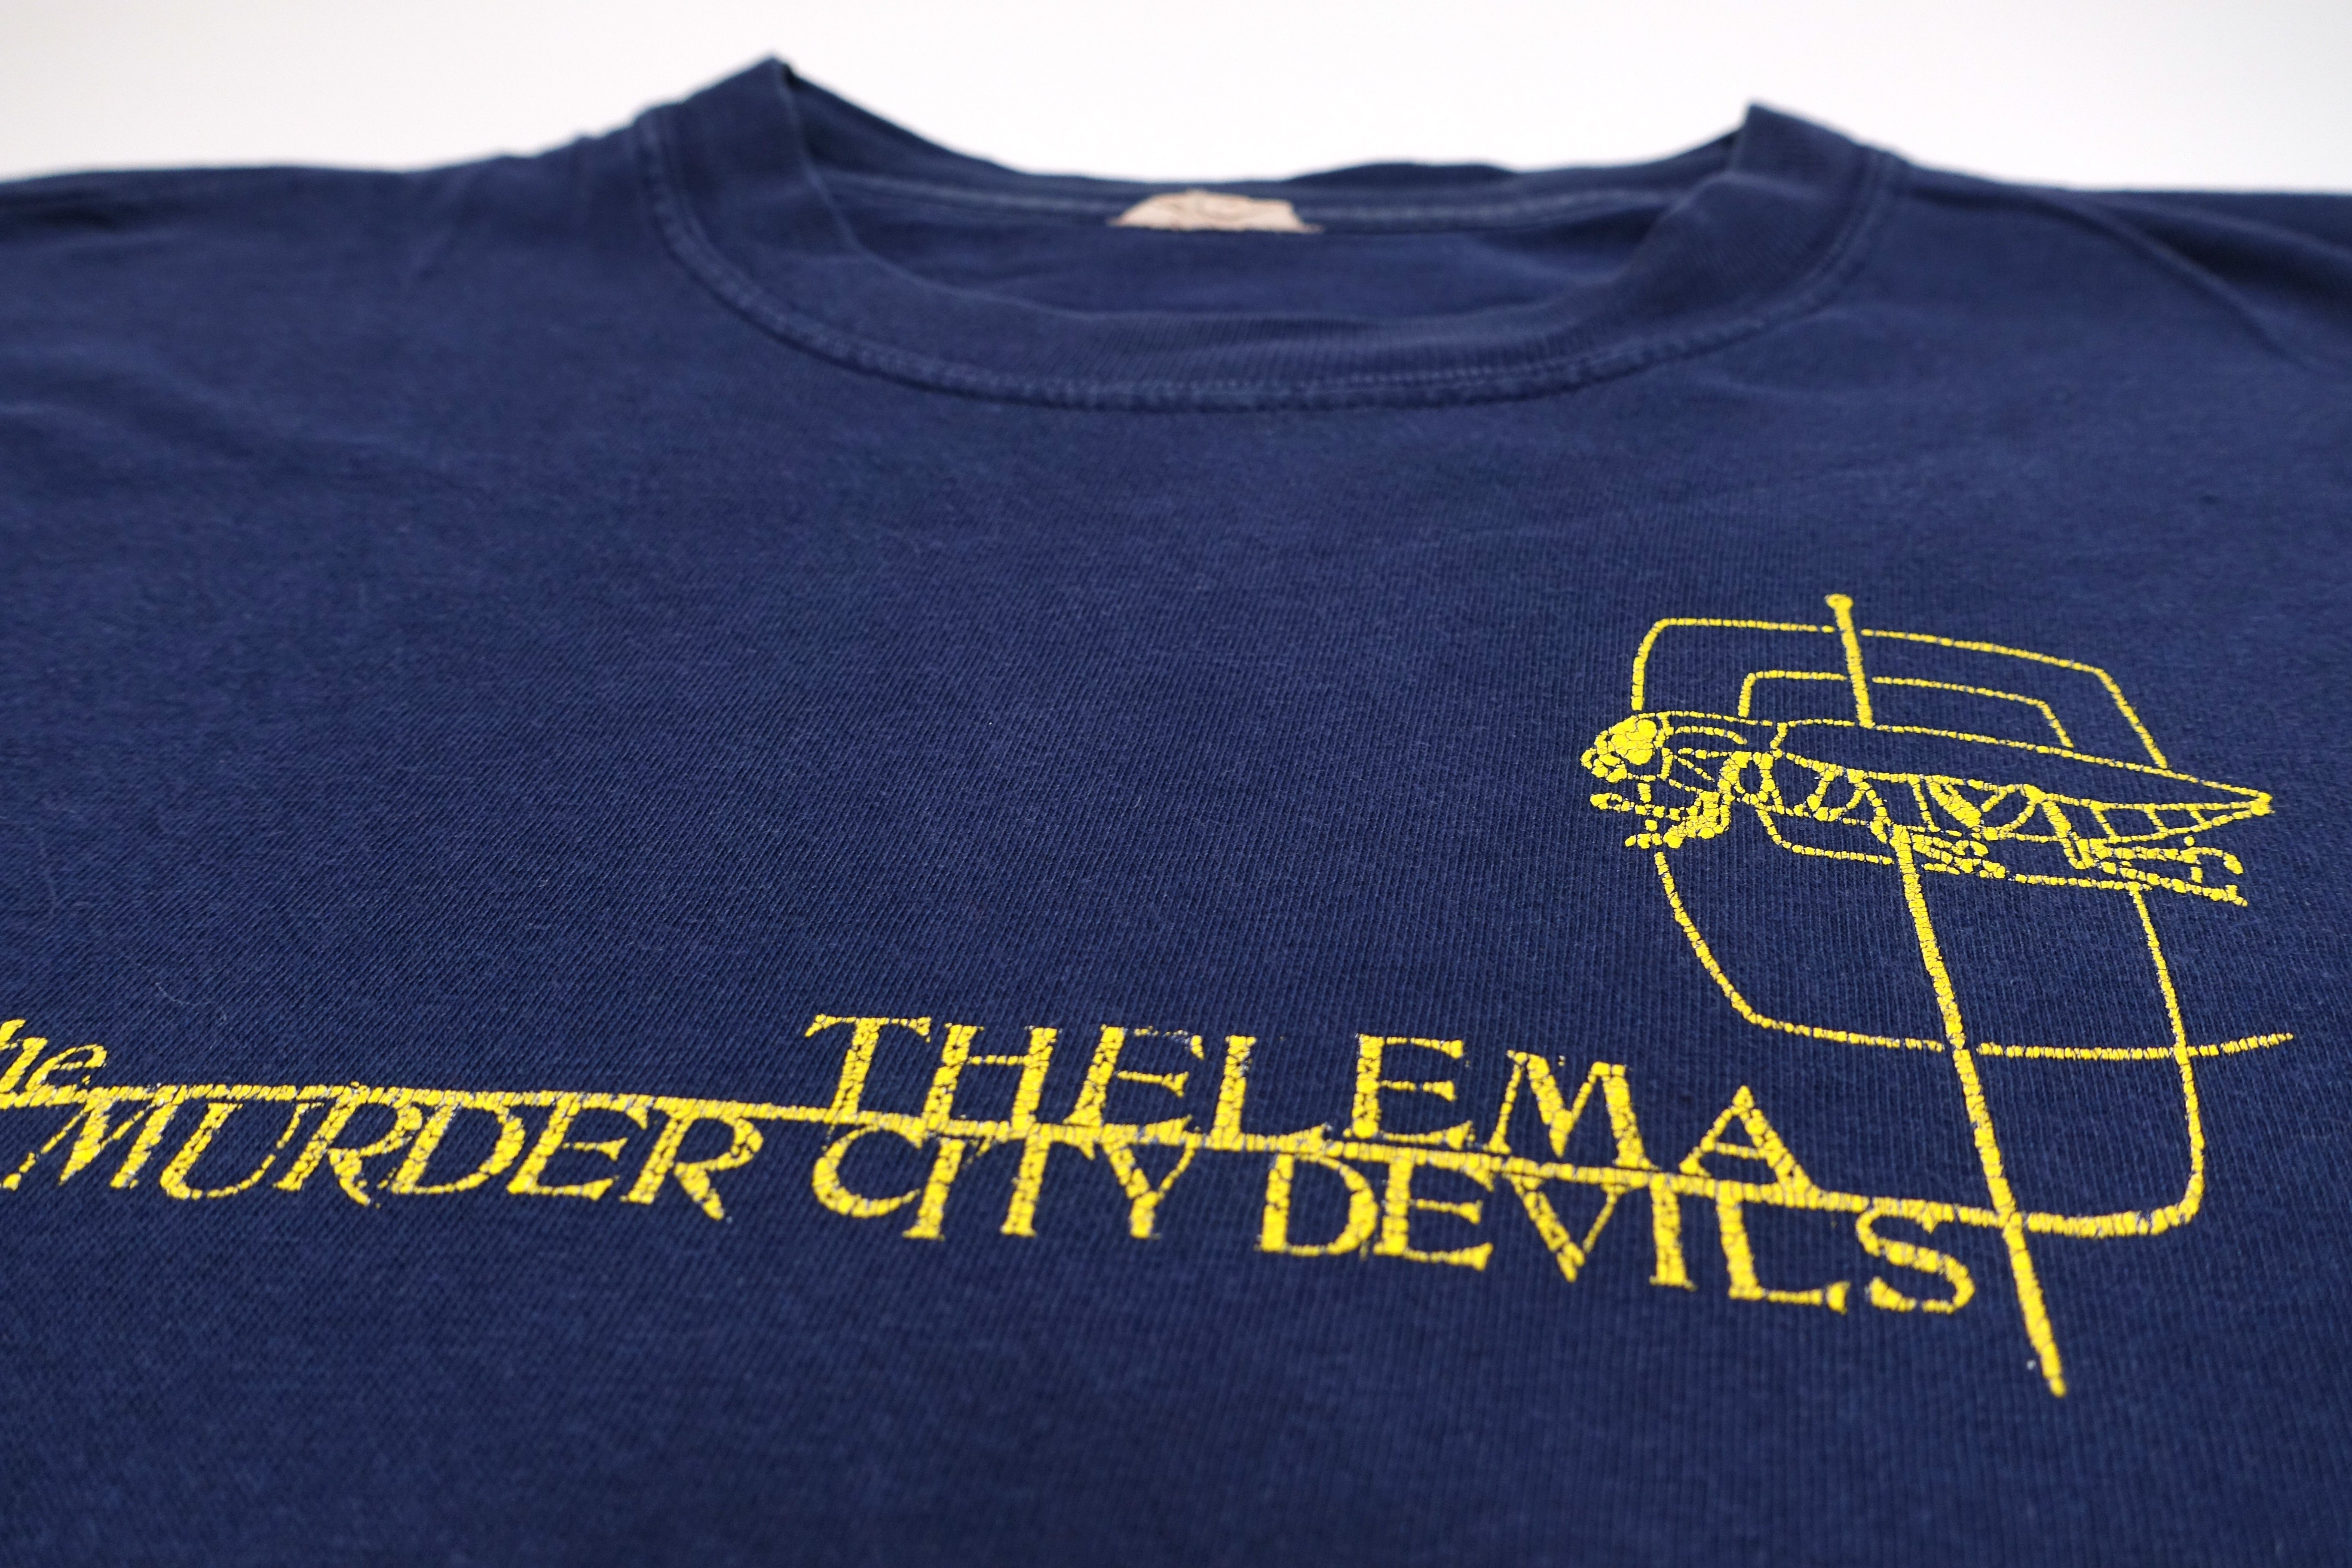 Murder City Devils ‎– Thelma 2001 Tour Shirt Size Large